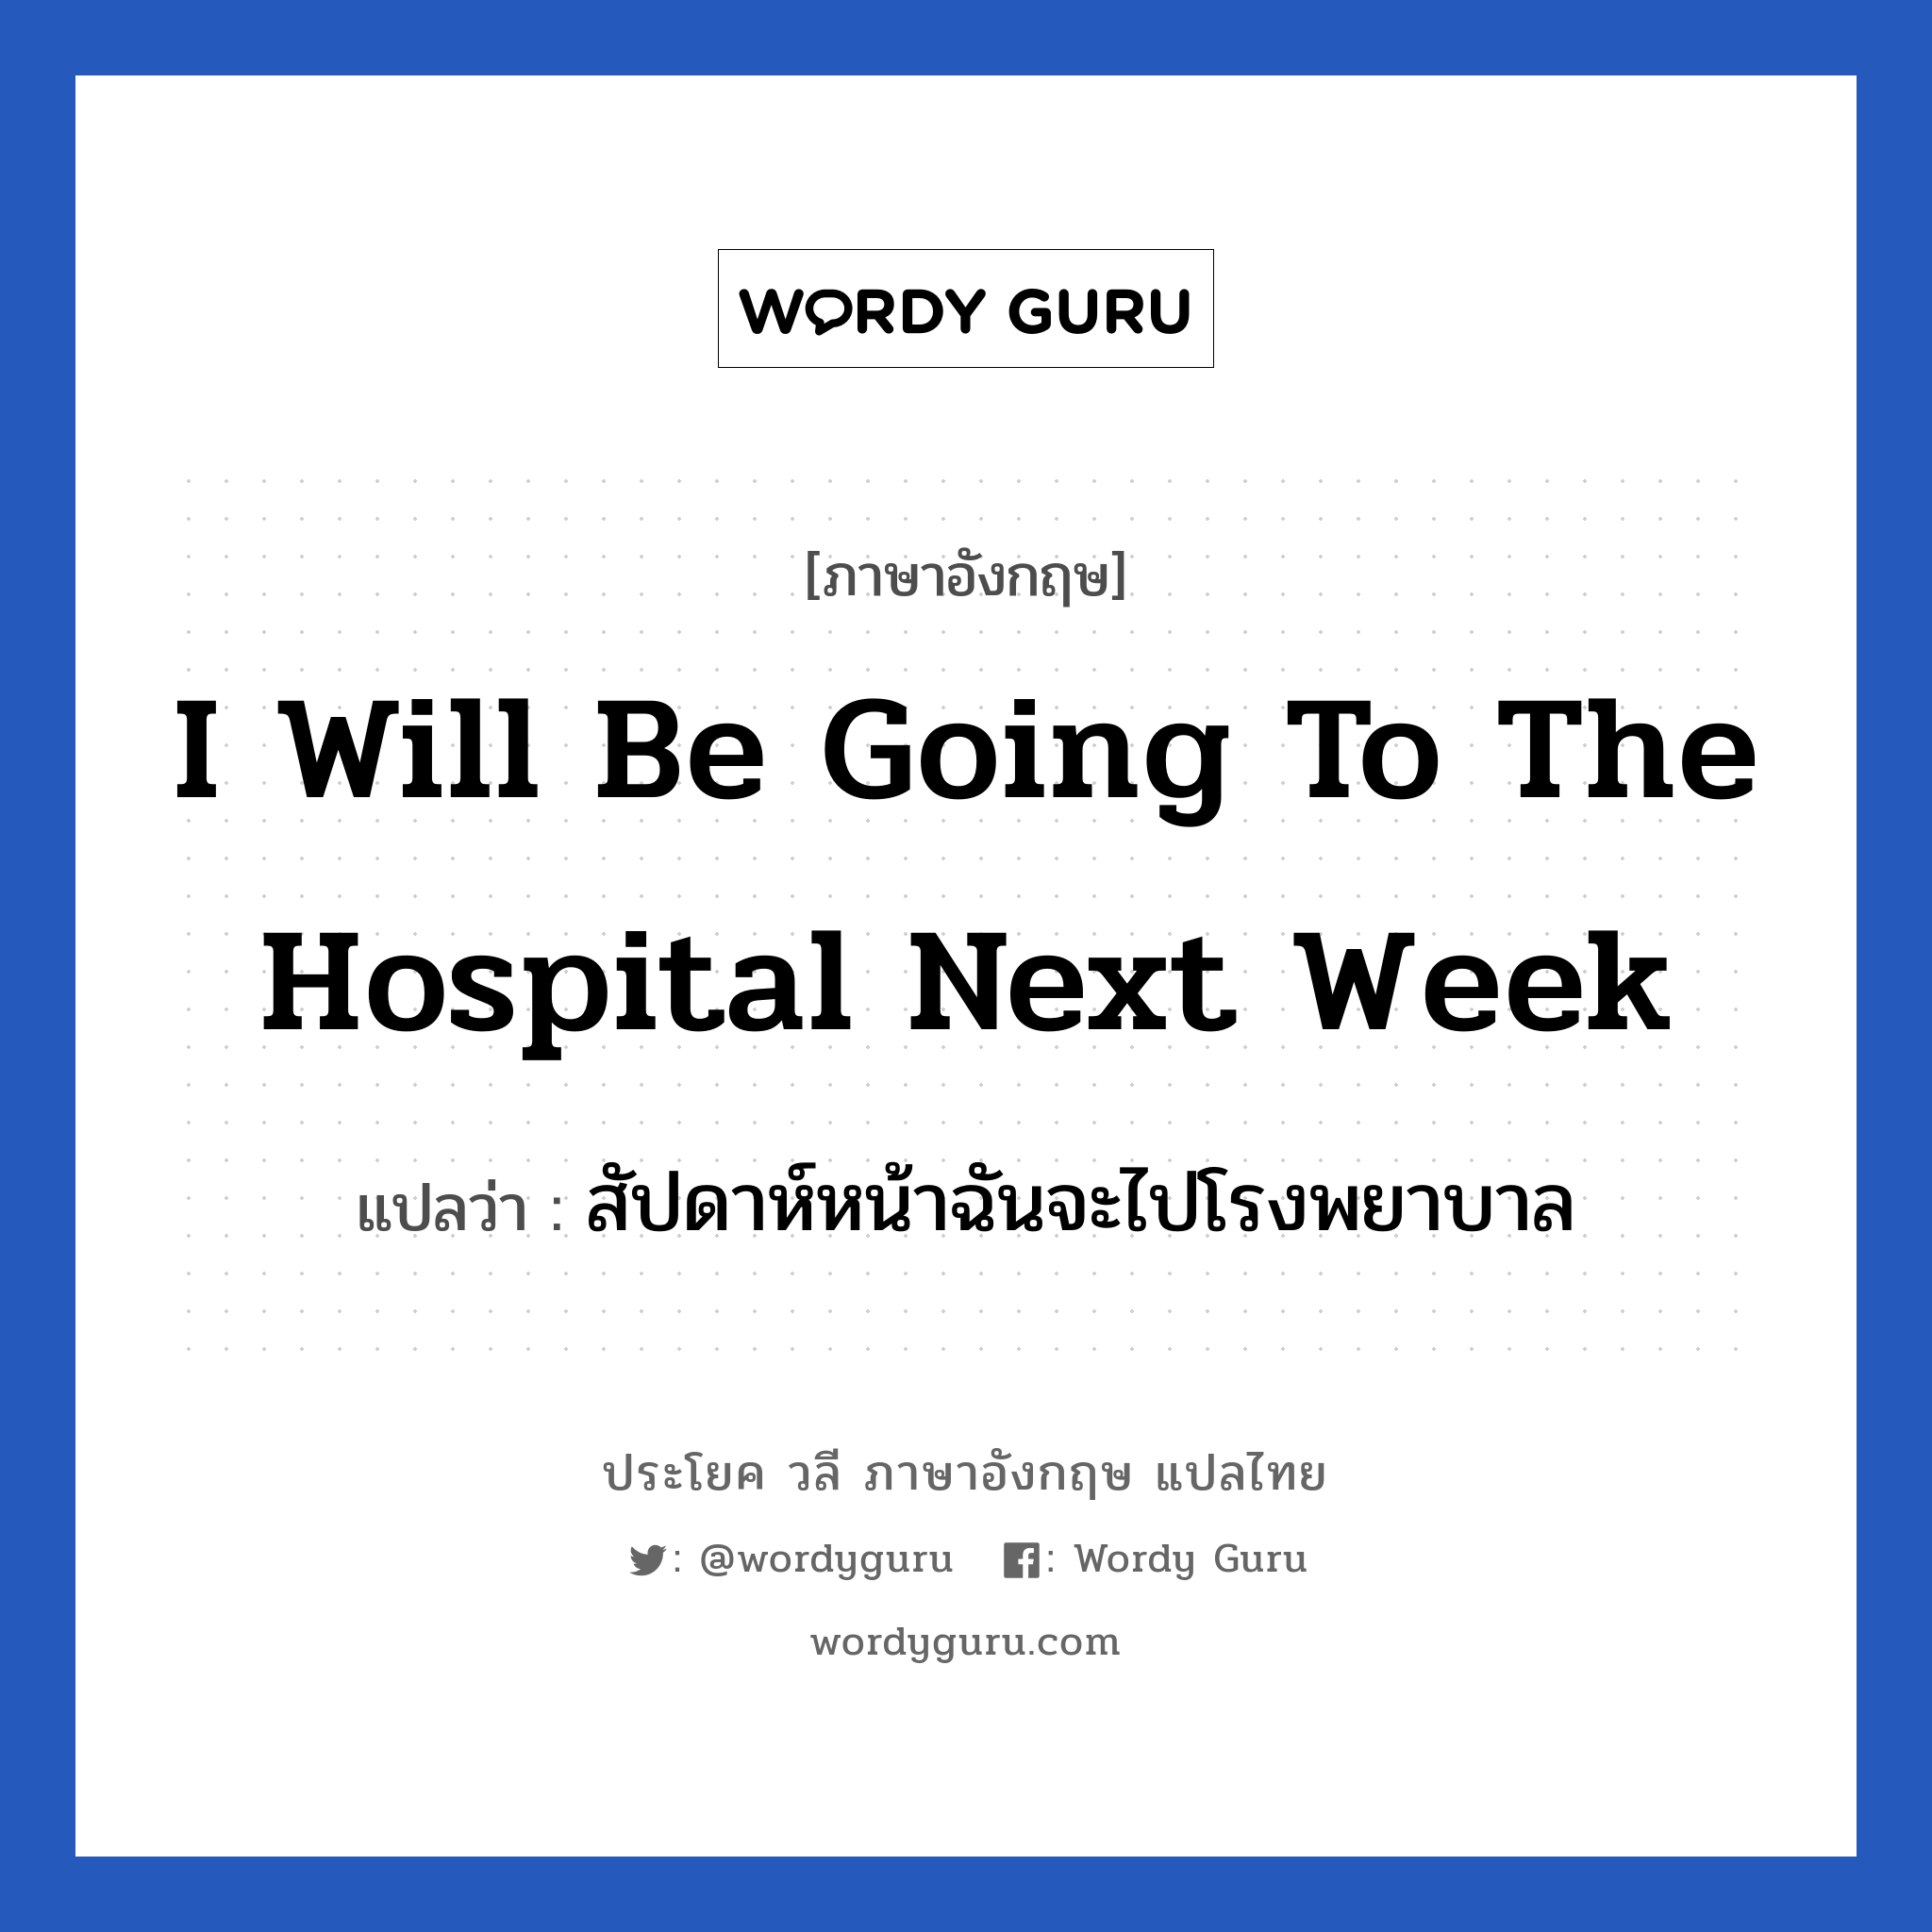 สัปดาห์หน้าฉันจะไปโรงพยาบาล ภาษาอังกฤษ?, วลีภาษาอังกฤษ สัปดาห์หน้าฉันจะไปโรงพยาบาล แปลว่า I will be going to the hospital next week